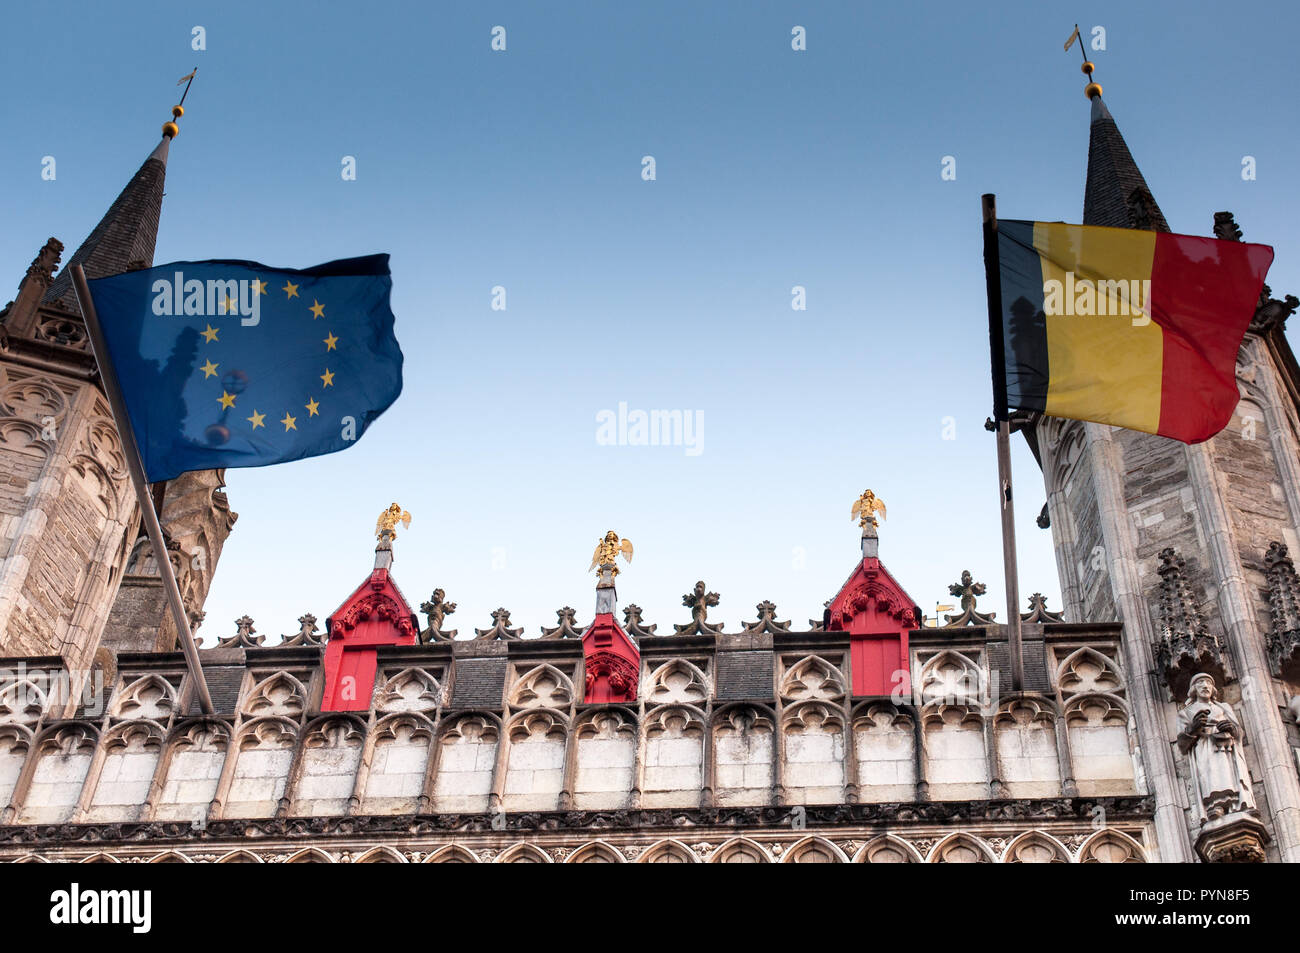 Une vue détaillée de la façade de la Cour provinciale flamande (Provinciaal Hof) avec les anges d'or et de l'Europe et la Belgique des drapeaux. Bruges, Belgique, UNION EUROPÉENNE Banque D'Images